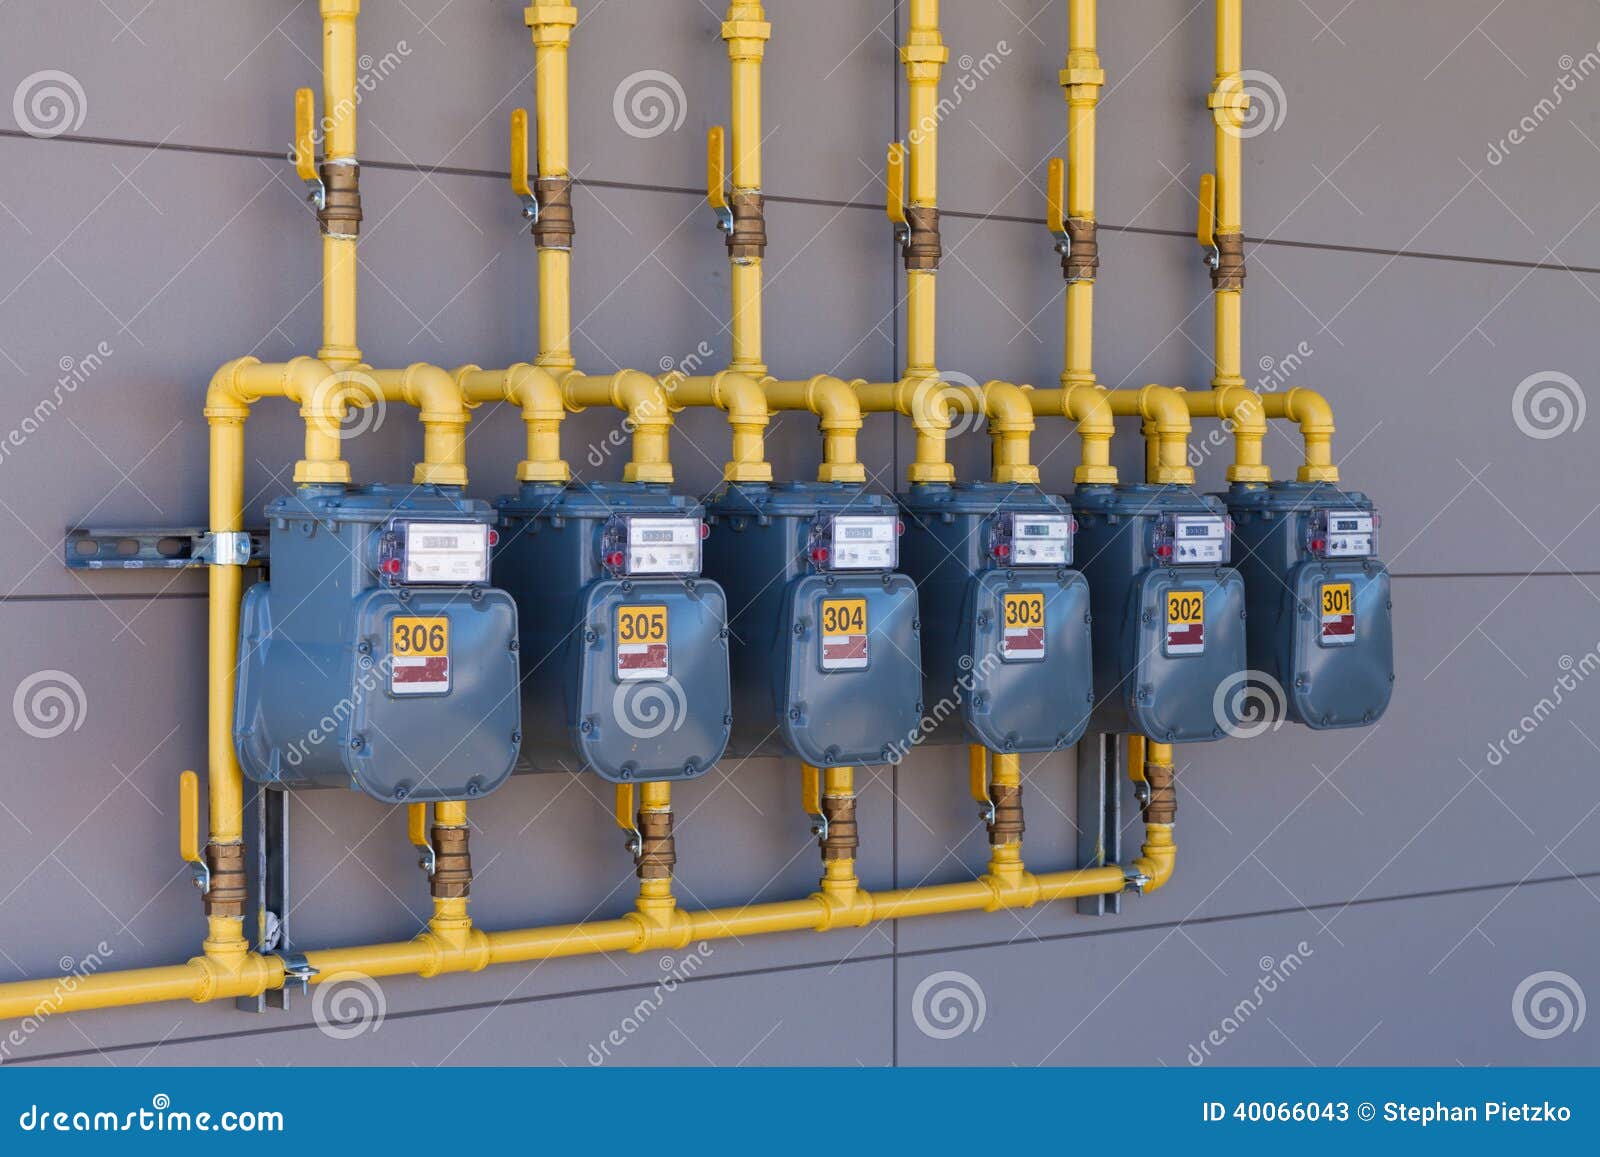 residential gas energy meters row supply plumbing